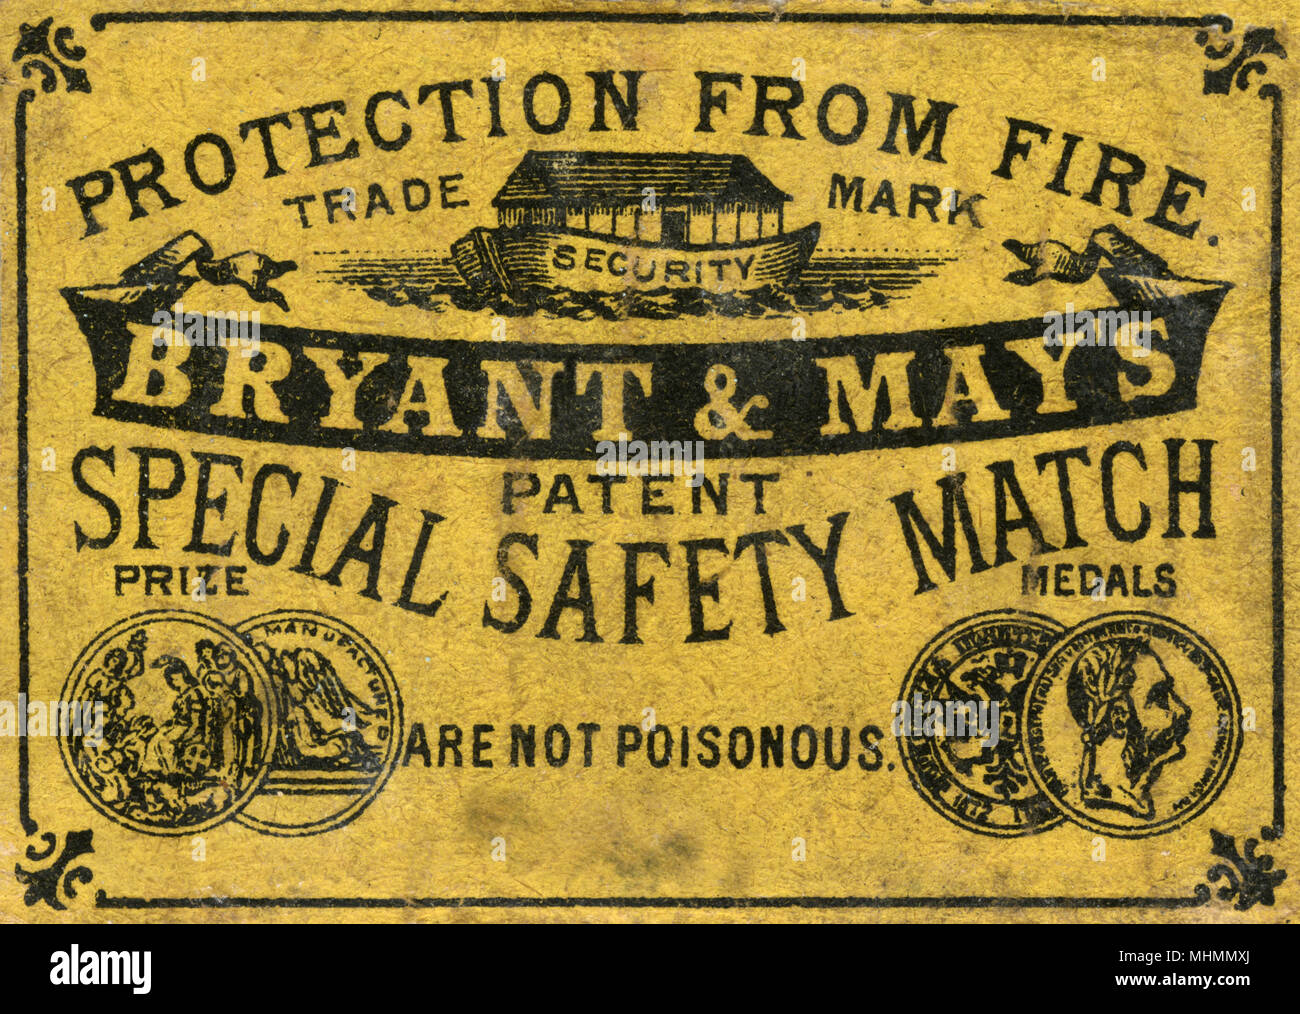 Bryant e speciale maggio match di sicurezza matchbox etichetta con premio medaglie e dichiarando la protezione dal fuoco e non sono velenosi Data: c. 1910s Foto Stock